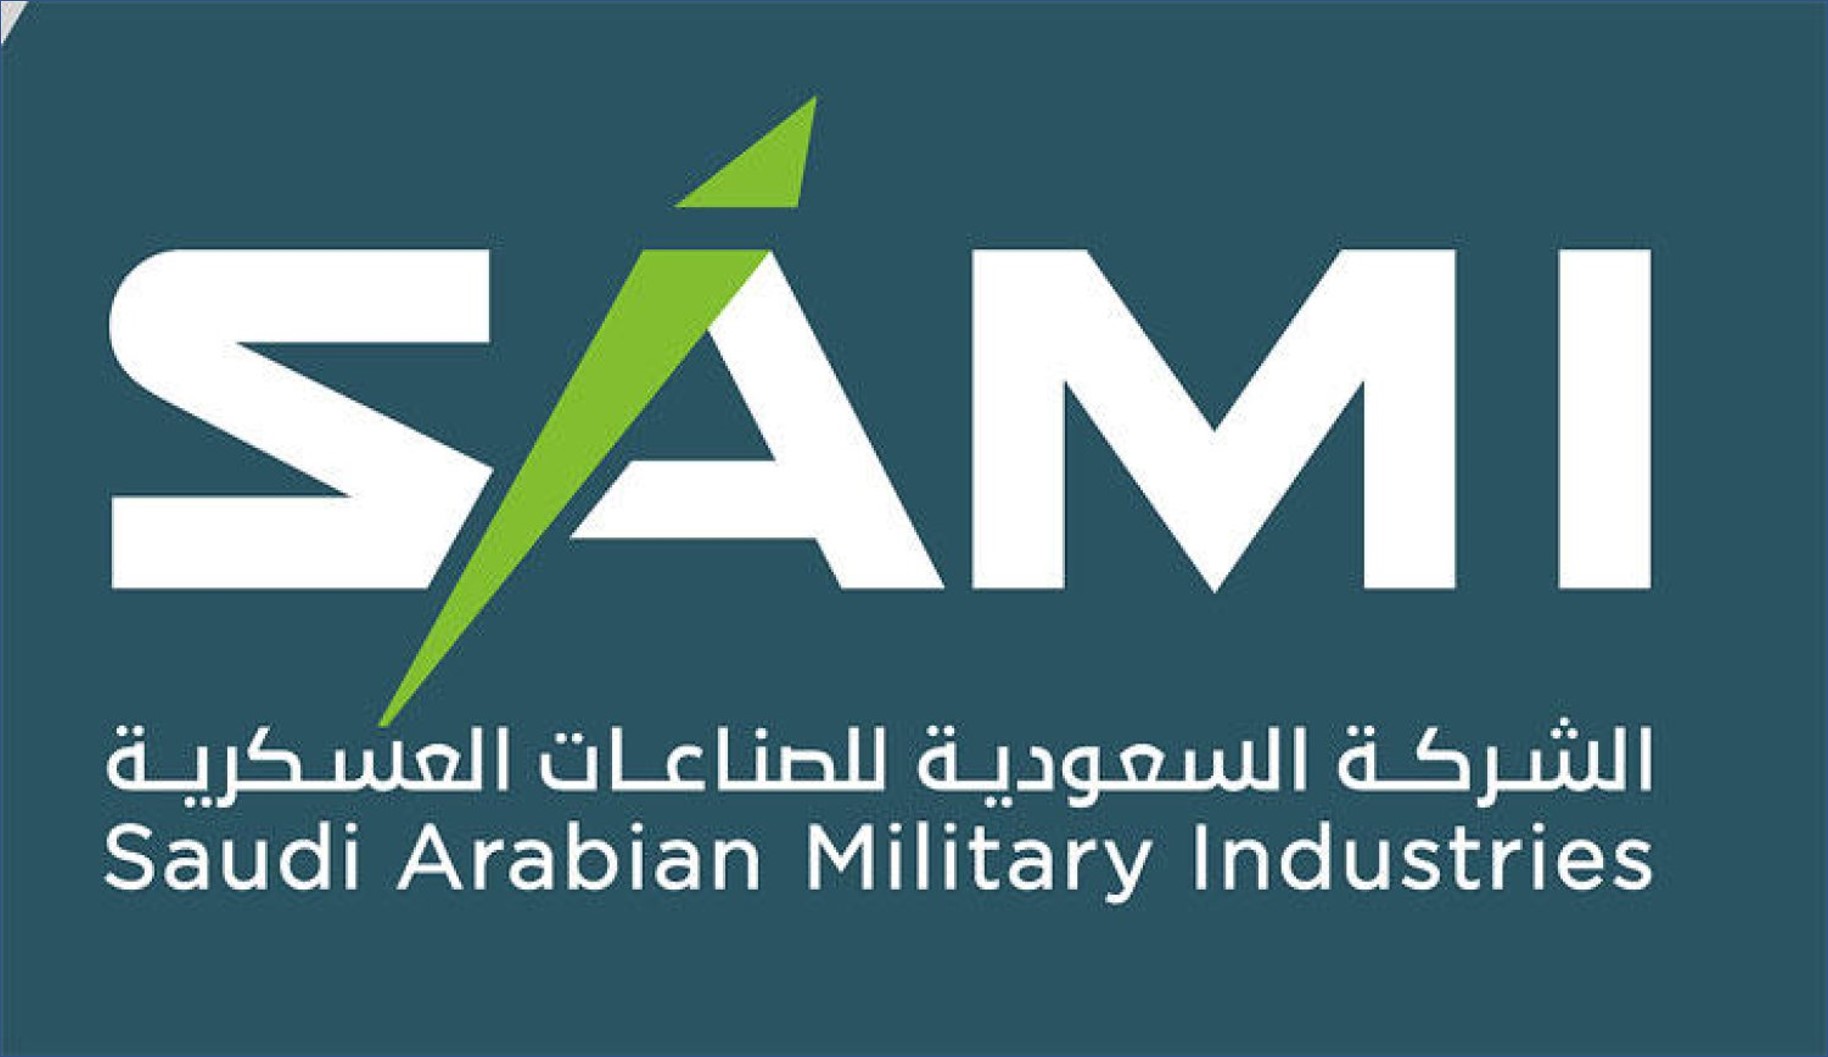 الشركة السعودية للصناعات توفر وظائف للرجال والنساء